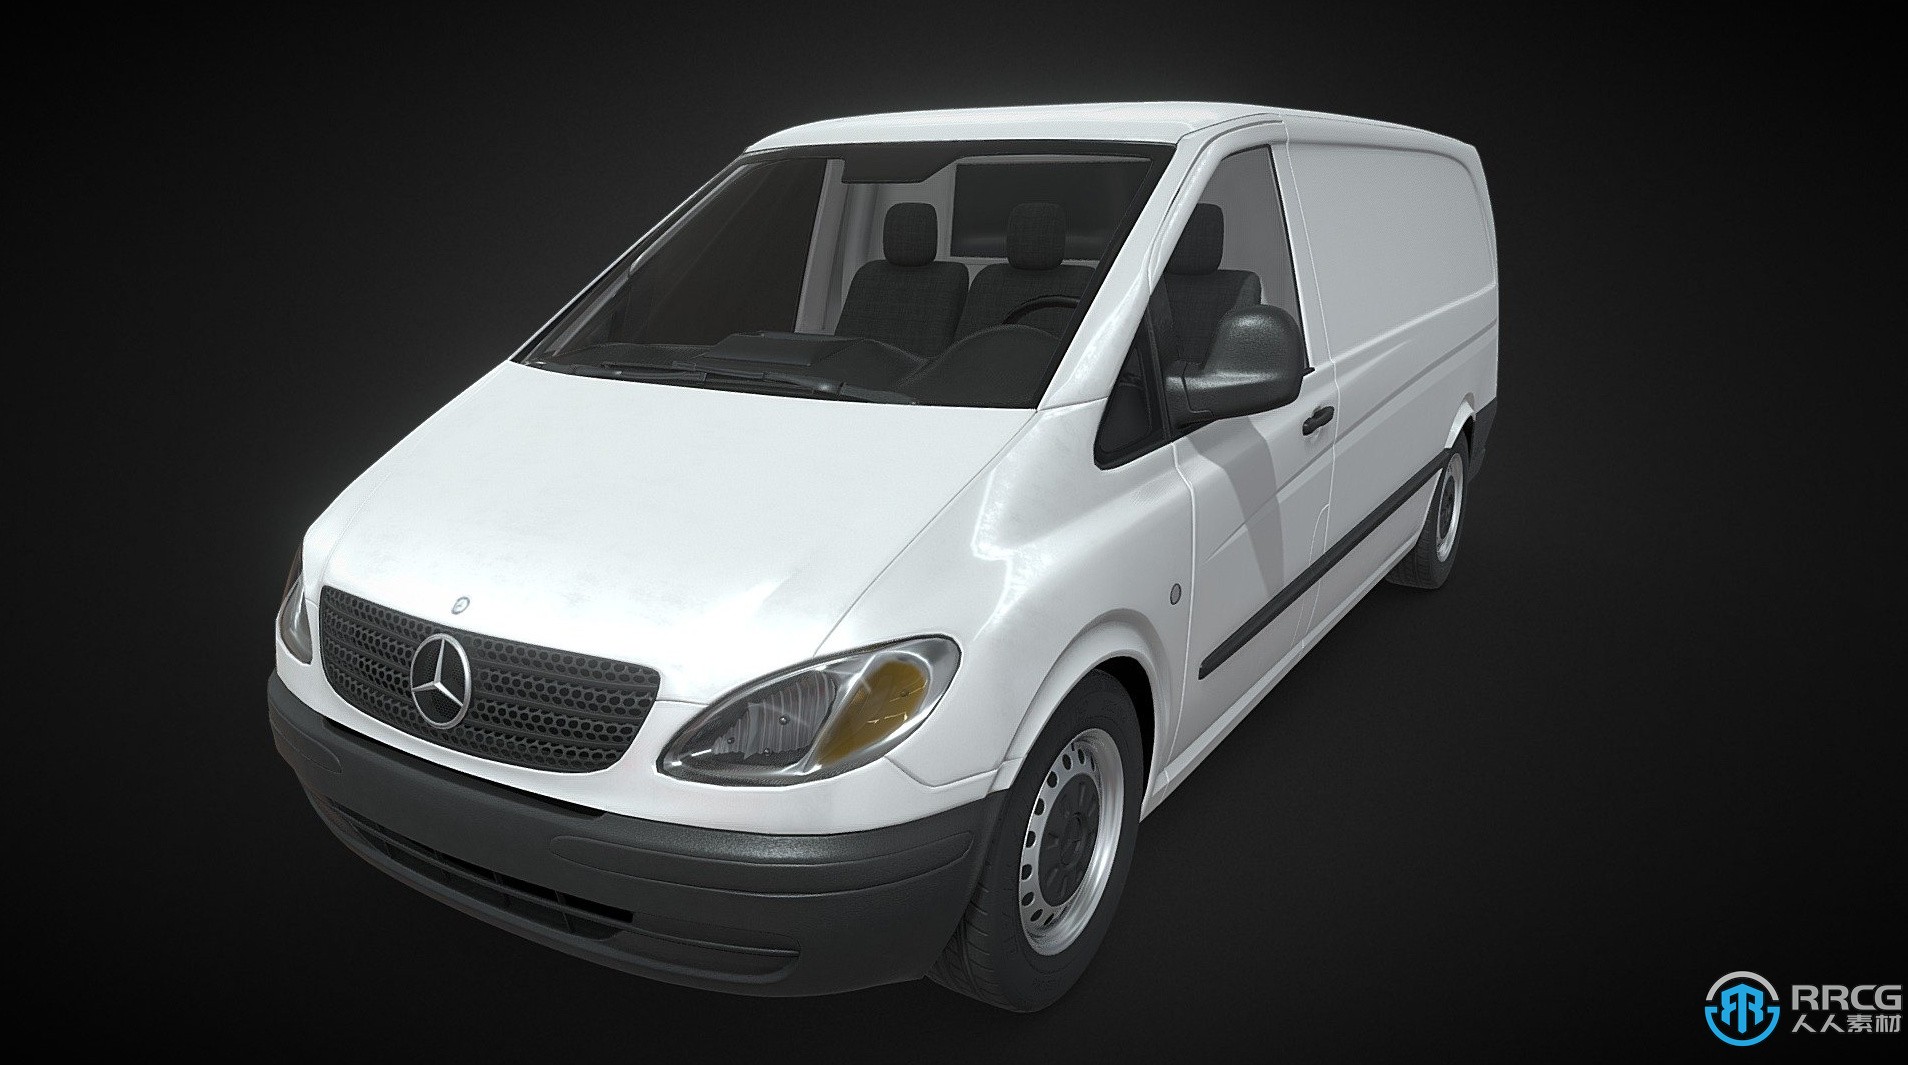 精选各类汽车3D模型2023年3月大合集